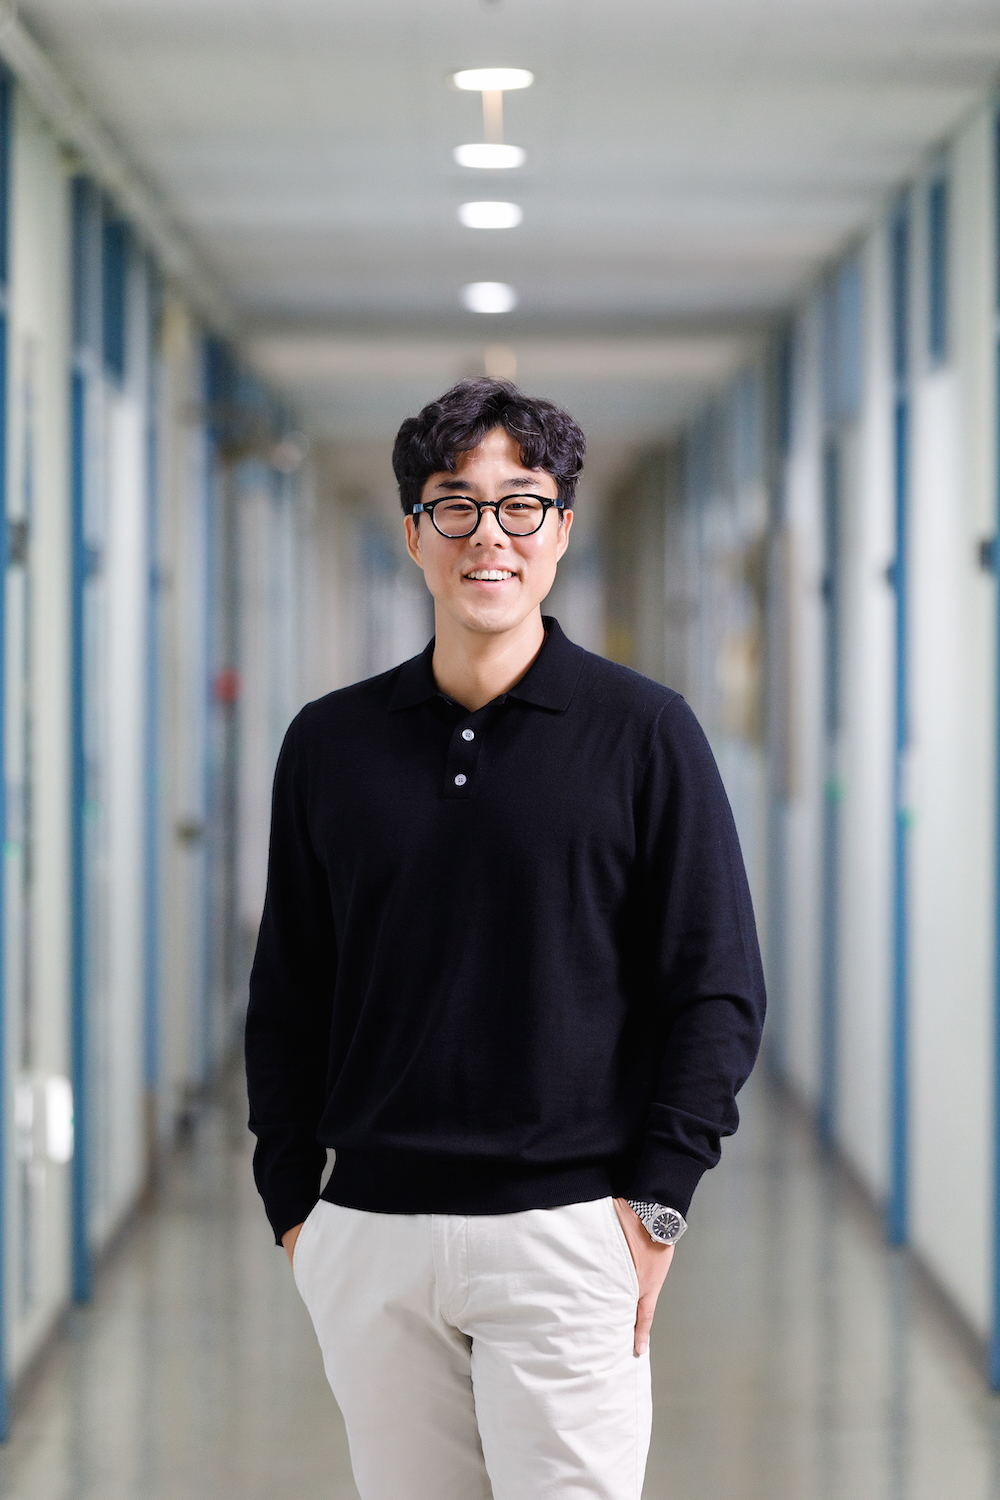 Professor Lee Han-Boram